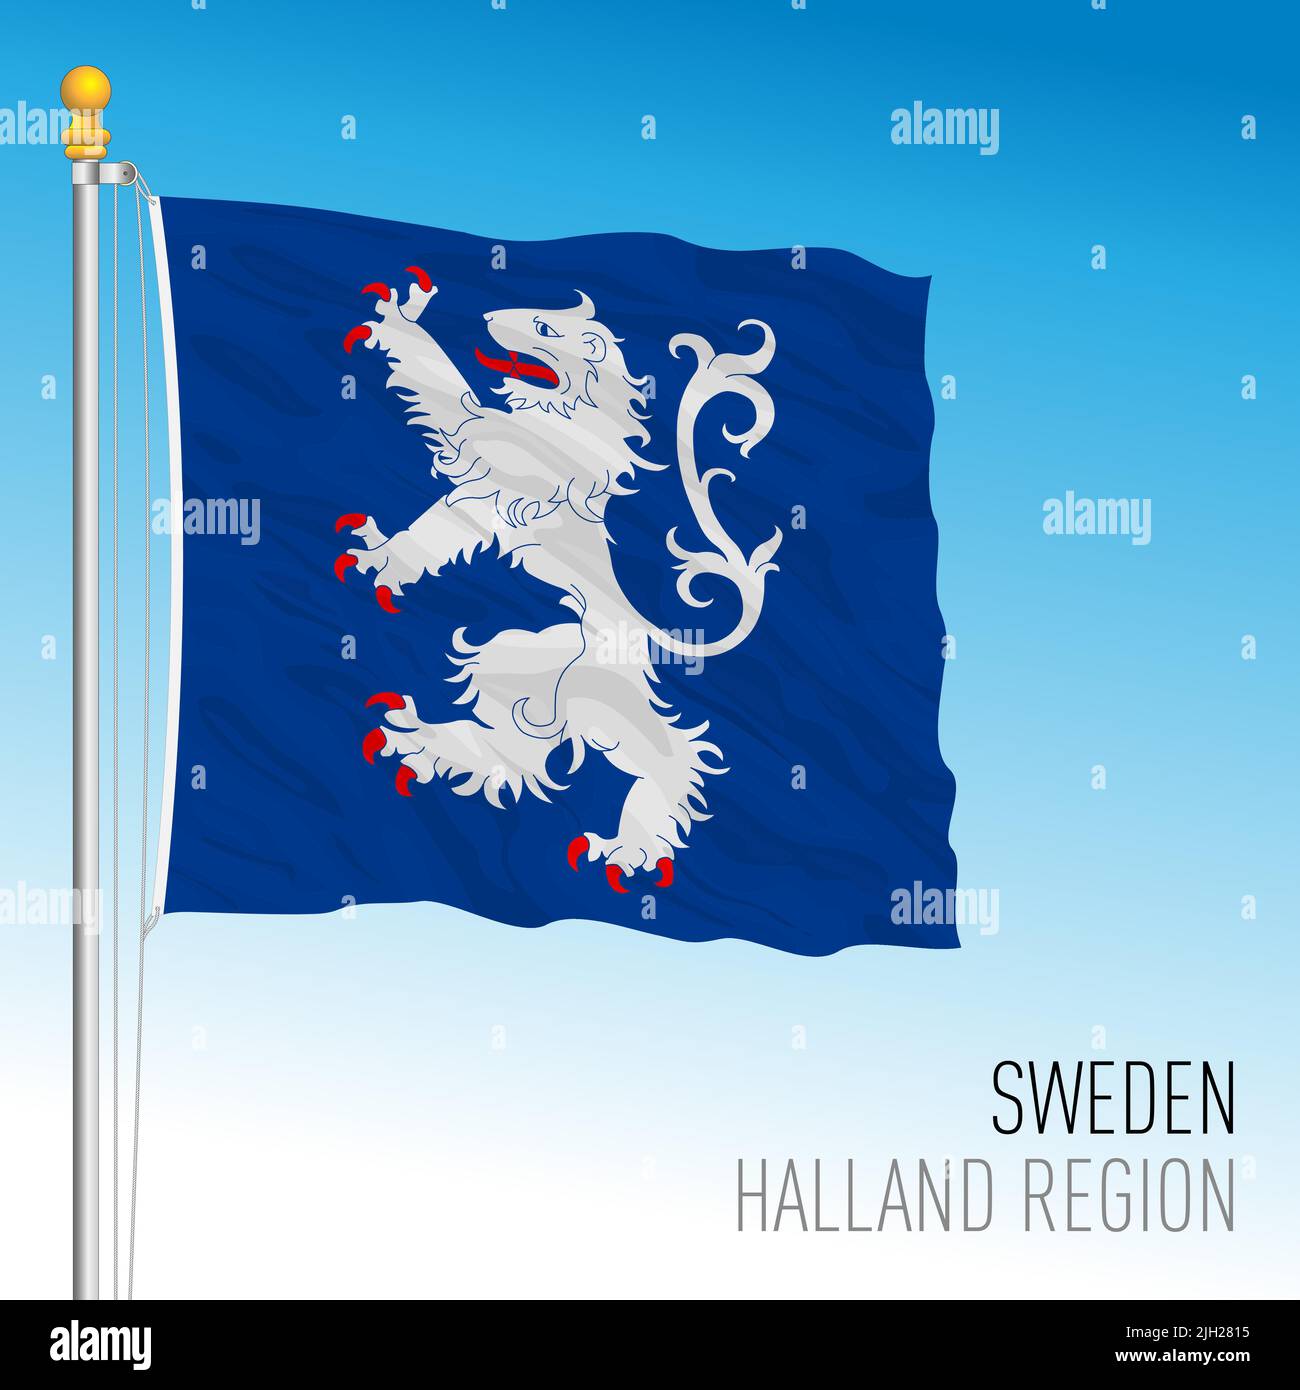 Bandera regional de Halland, Reino de Suecia, ilustración de vectores Ilustración del Vector